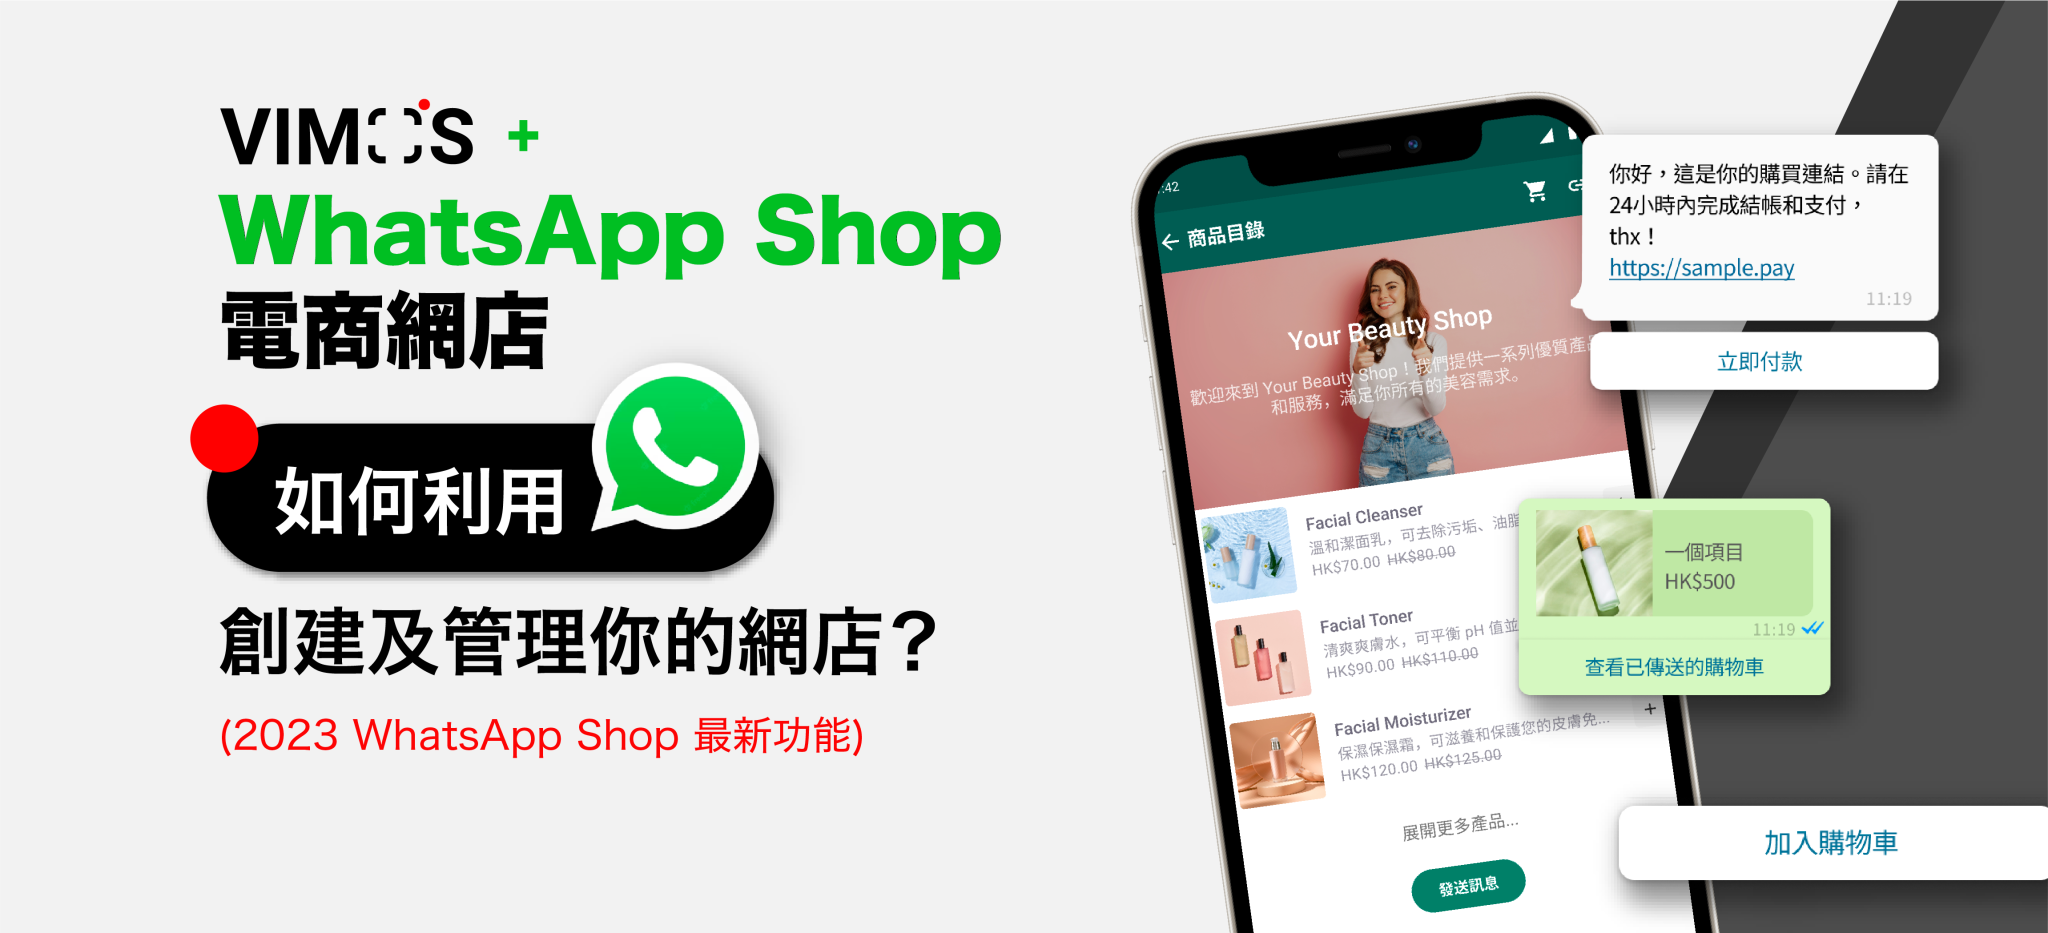 WhatsApp shop 電商網店